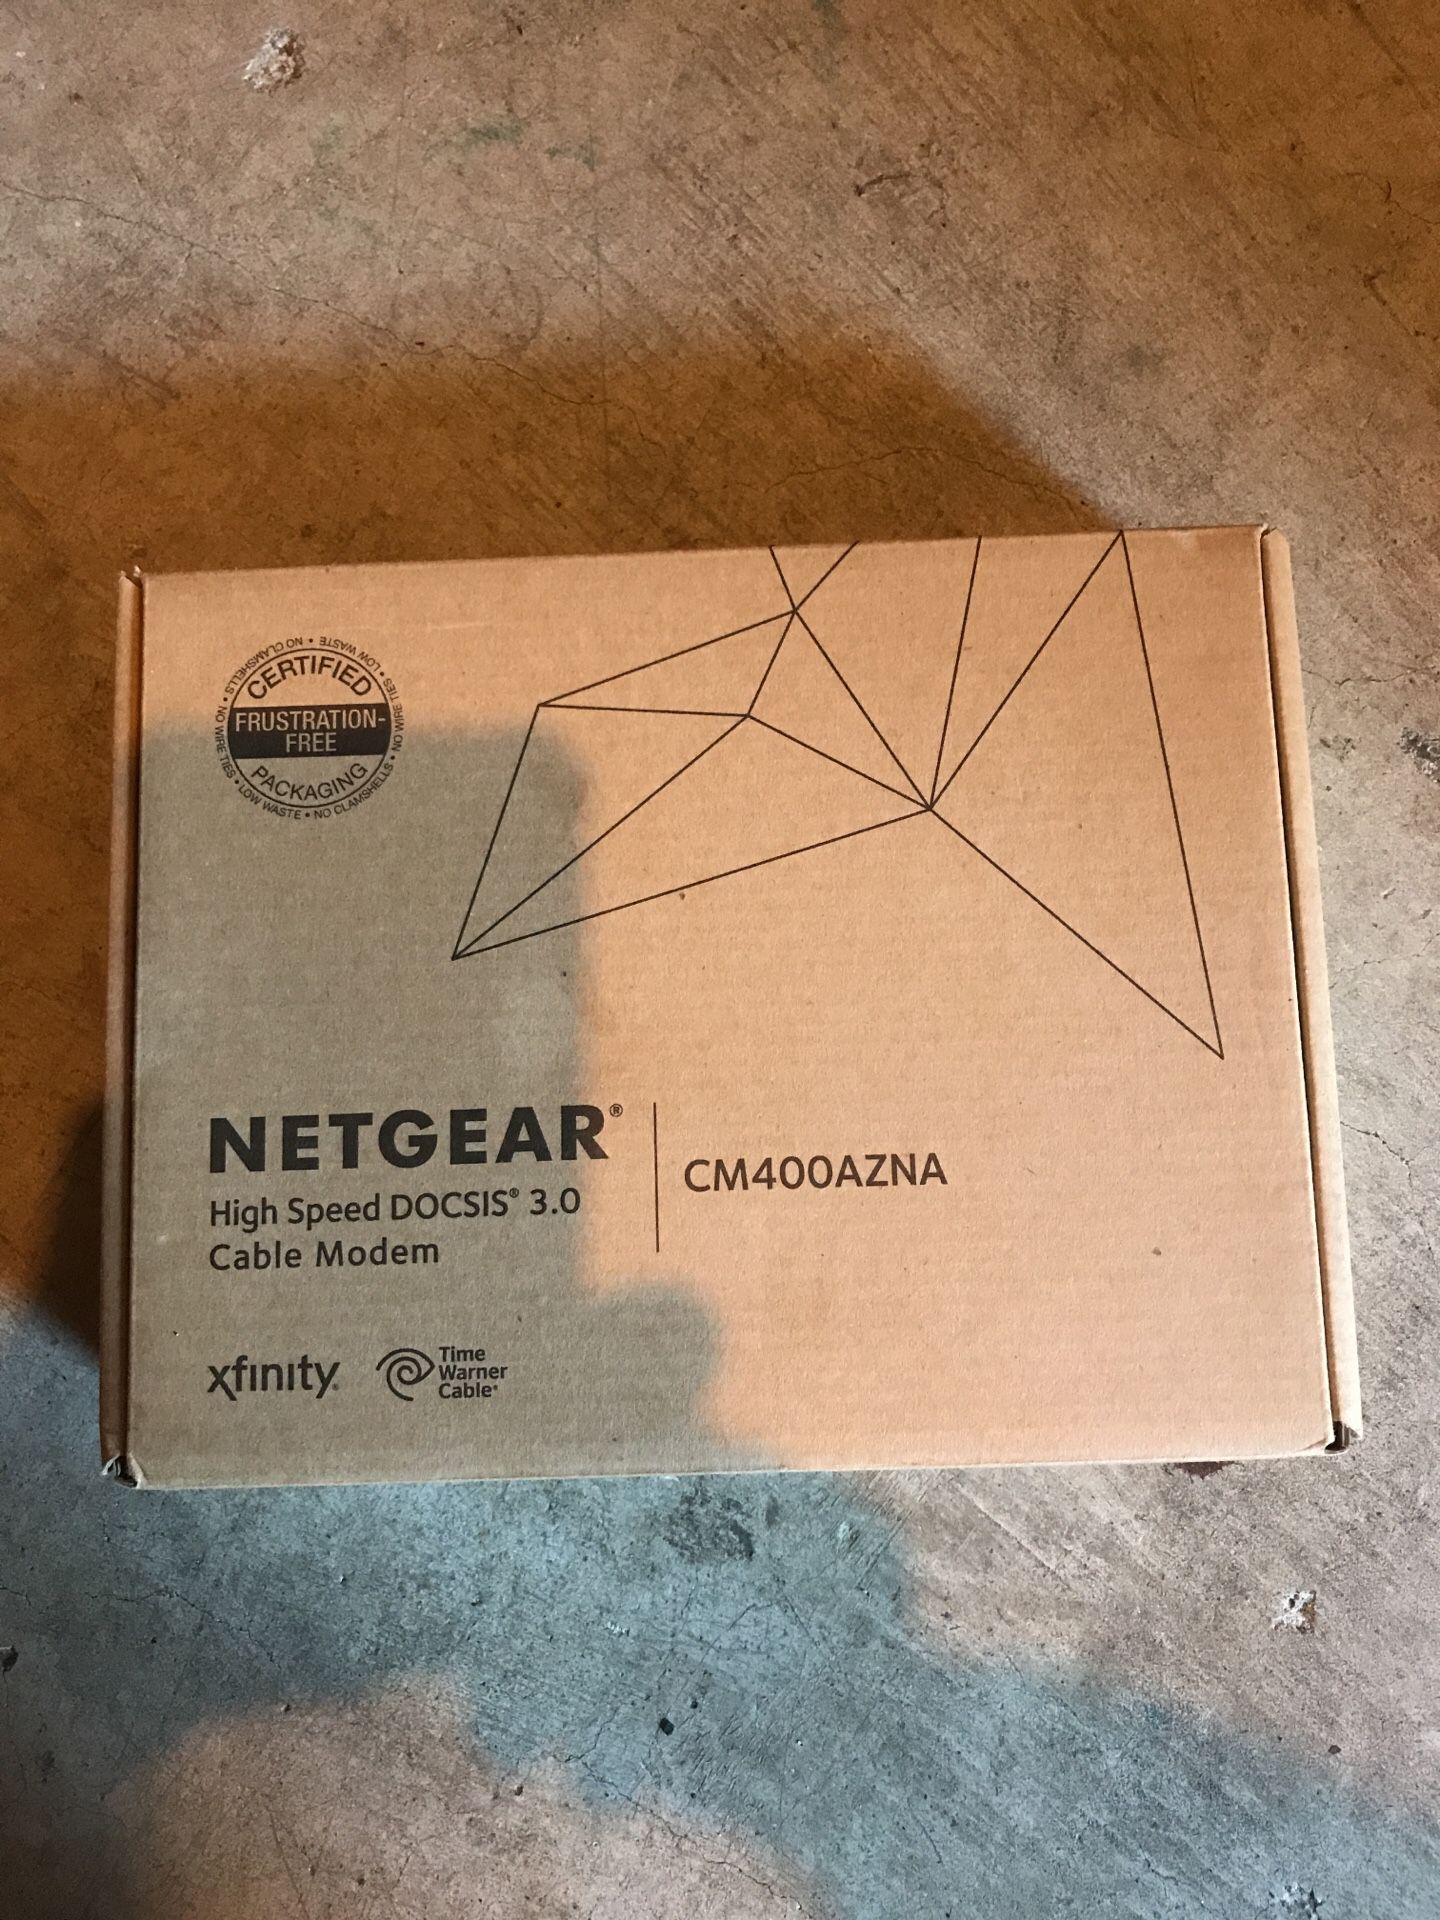 Netgear DOCSIS 3.0 modem compatible with comcast